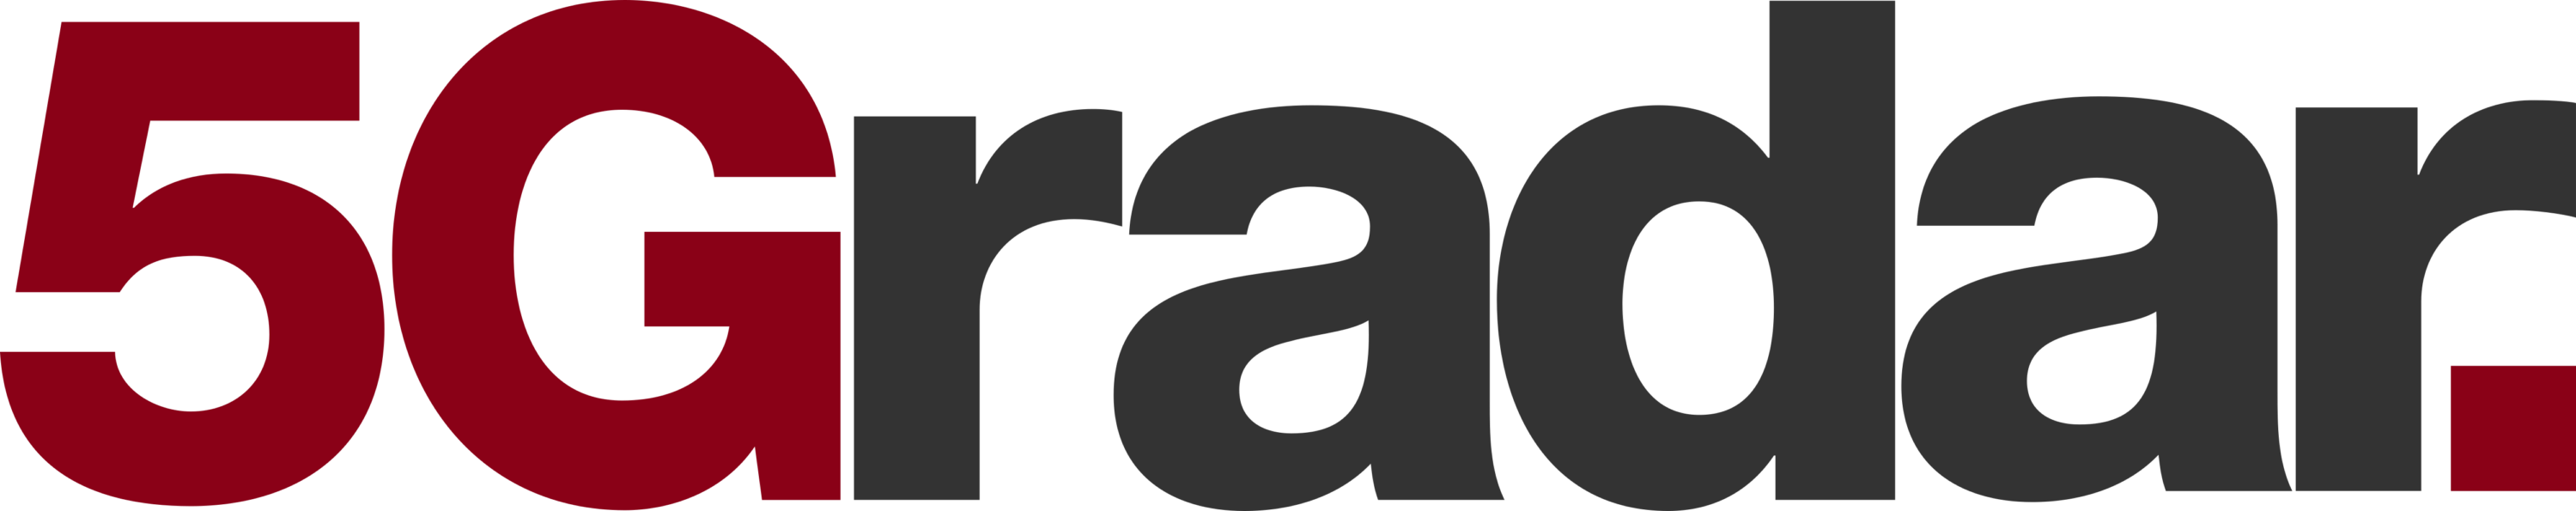 5Gradar Logo